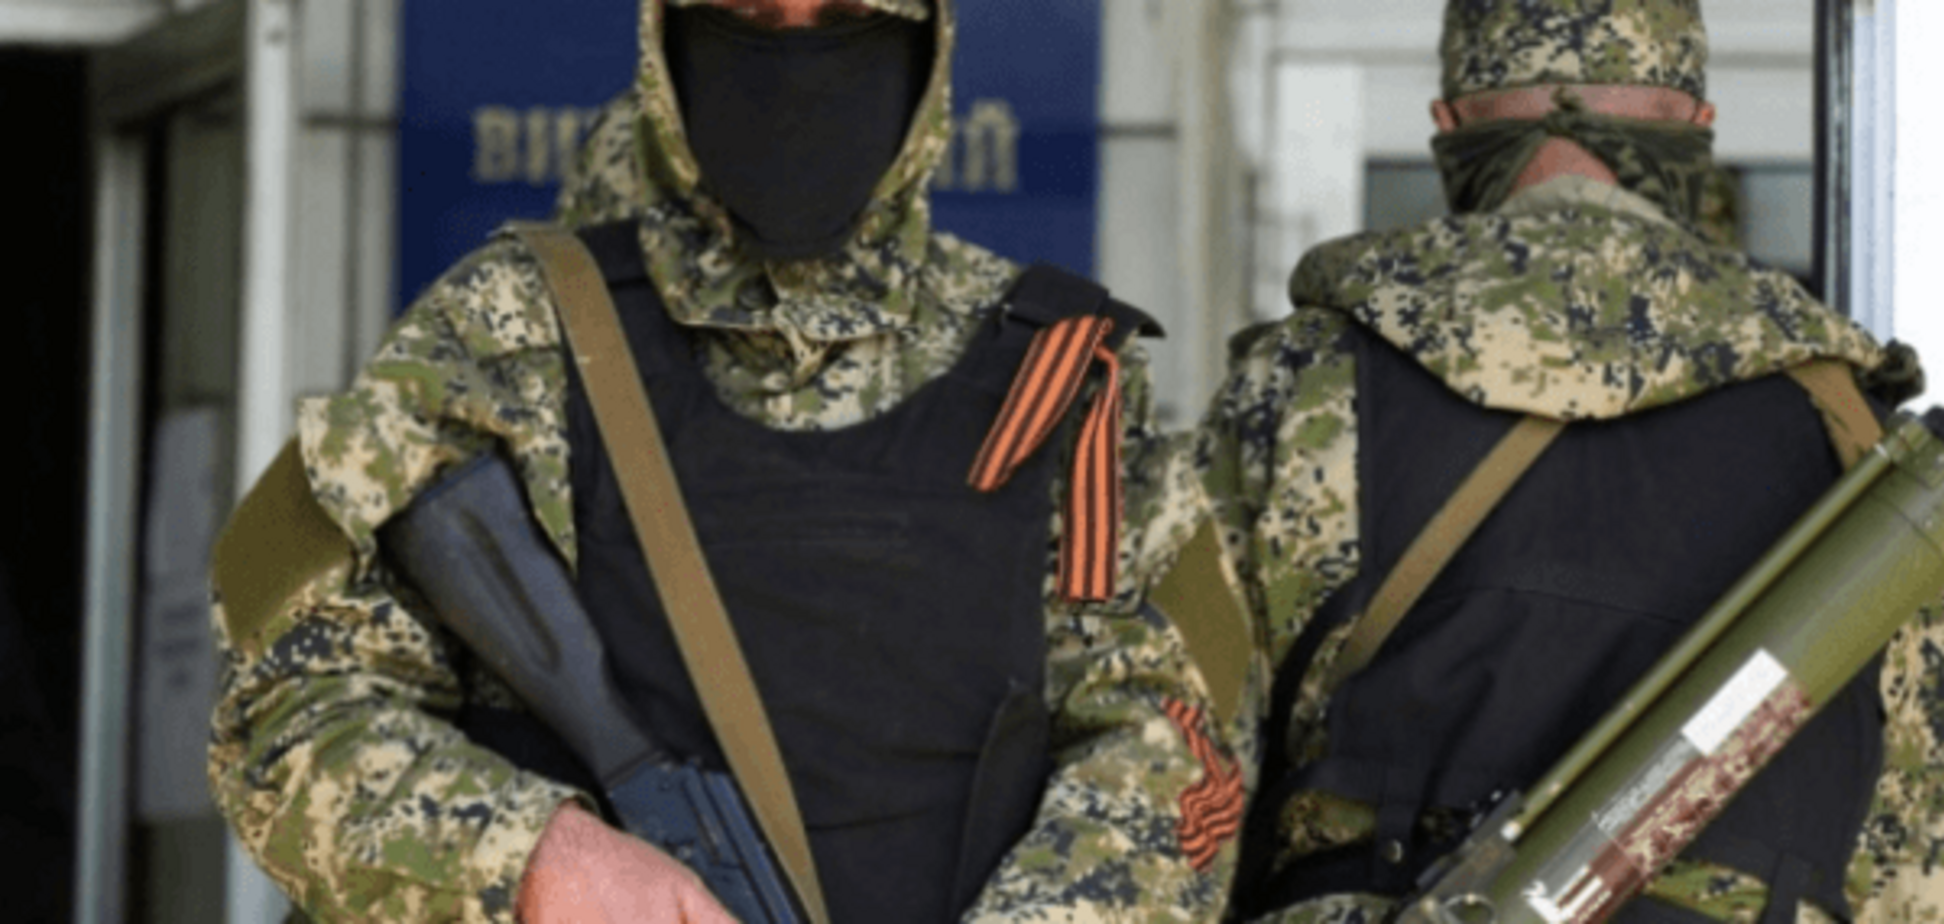 Внимание, распродажа! Расформированные террористы 'ДНР' массово сбывают оружие